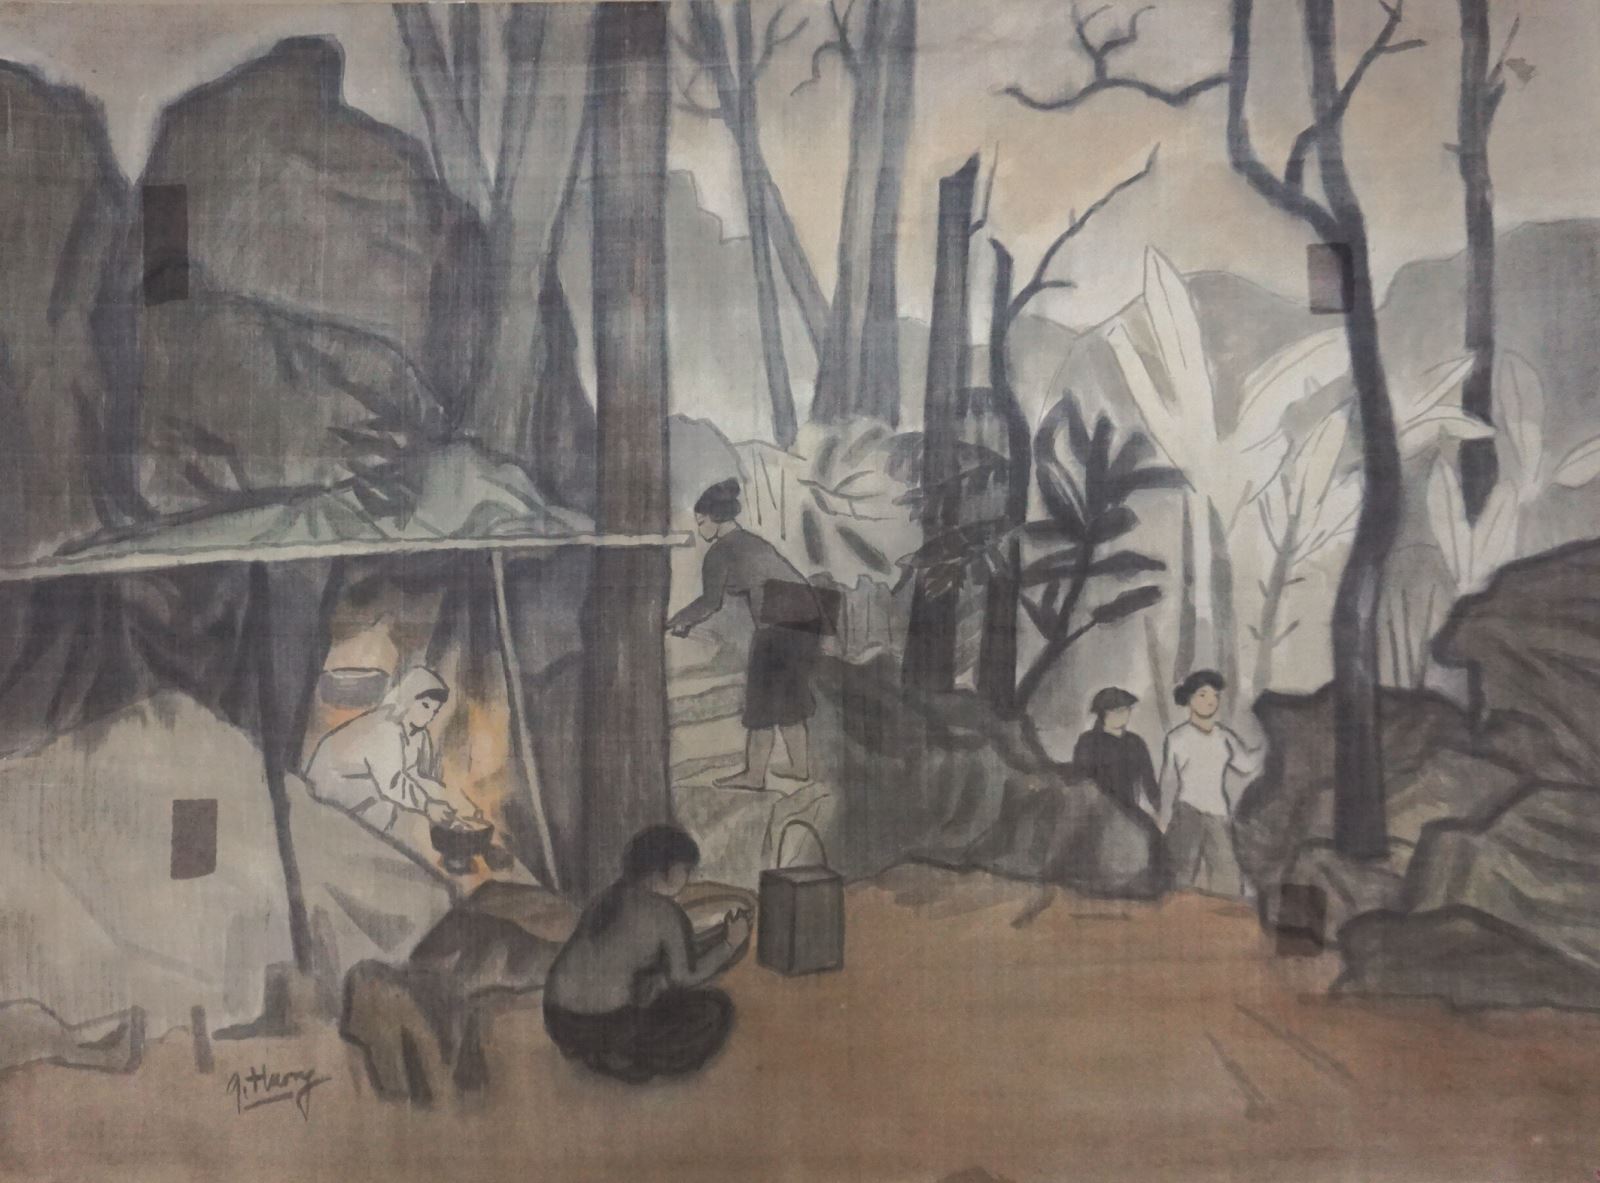 Tranh lụa của họa sĩ Vũ Giáng Hương trong Bảo tàng Mỹ thuật Việt Nam